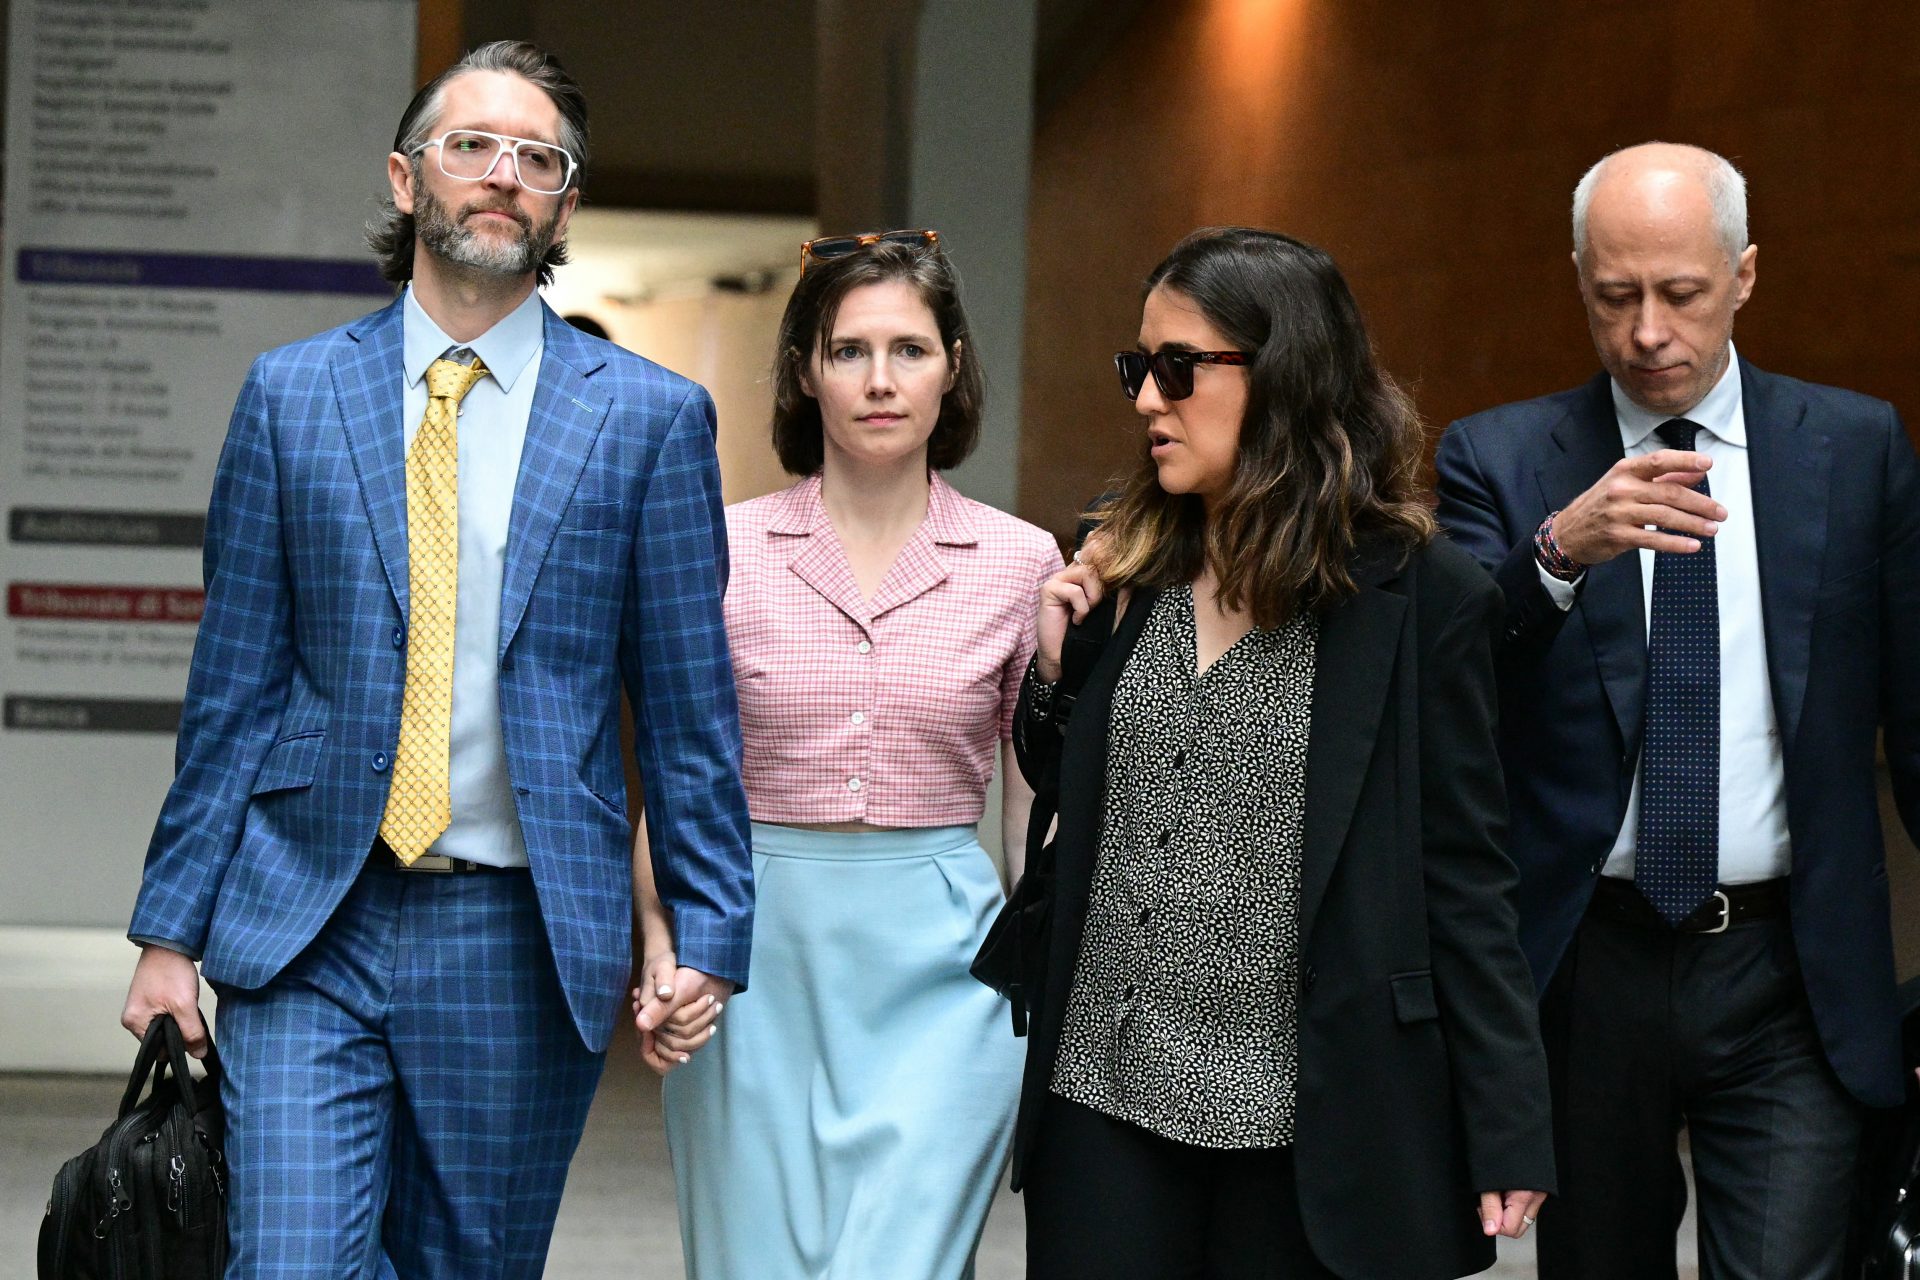 Amanda Knox condenada a 3 anos de prisão por calúnia